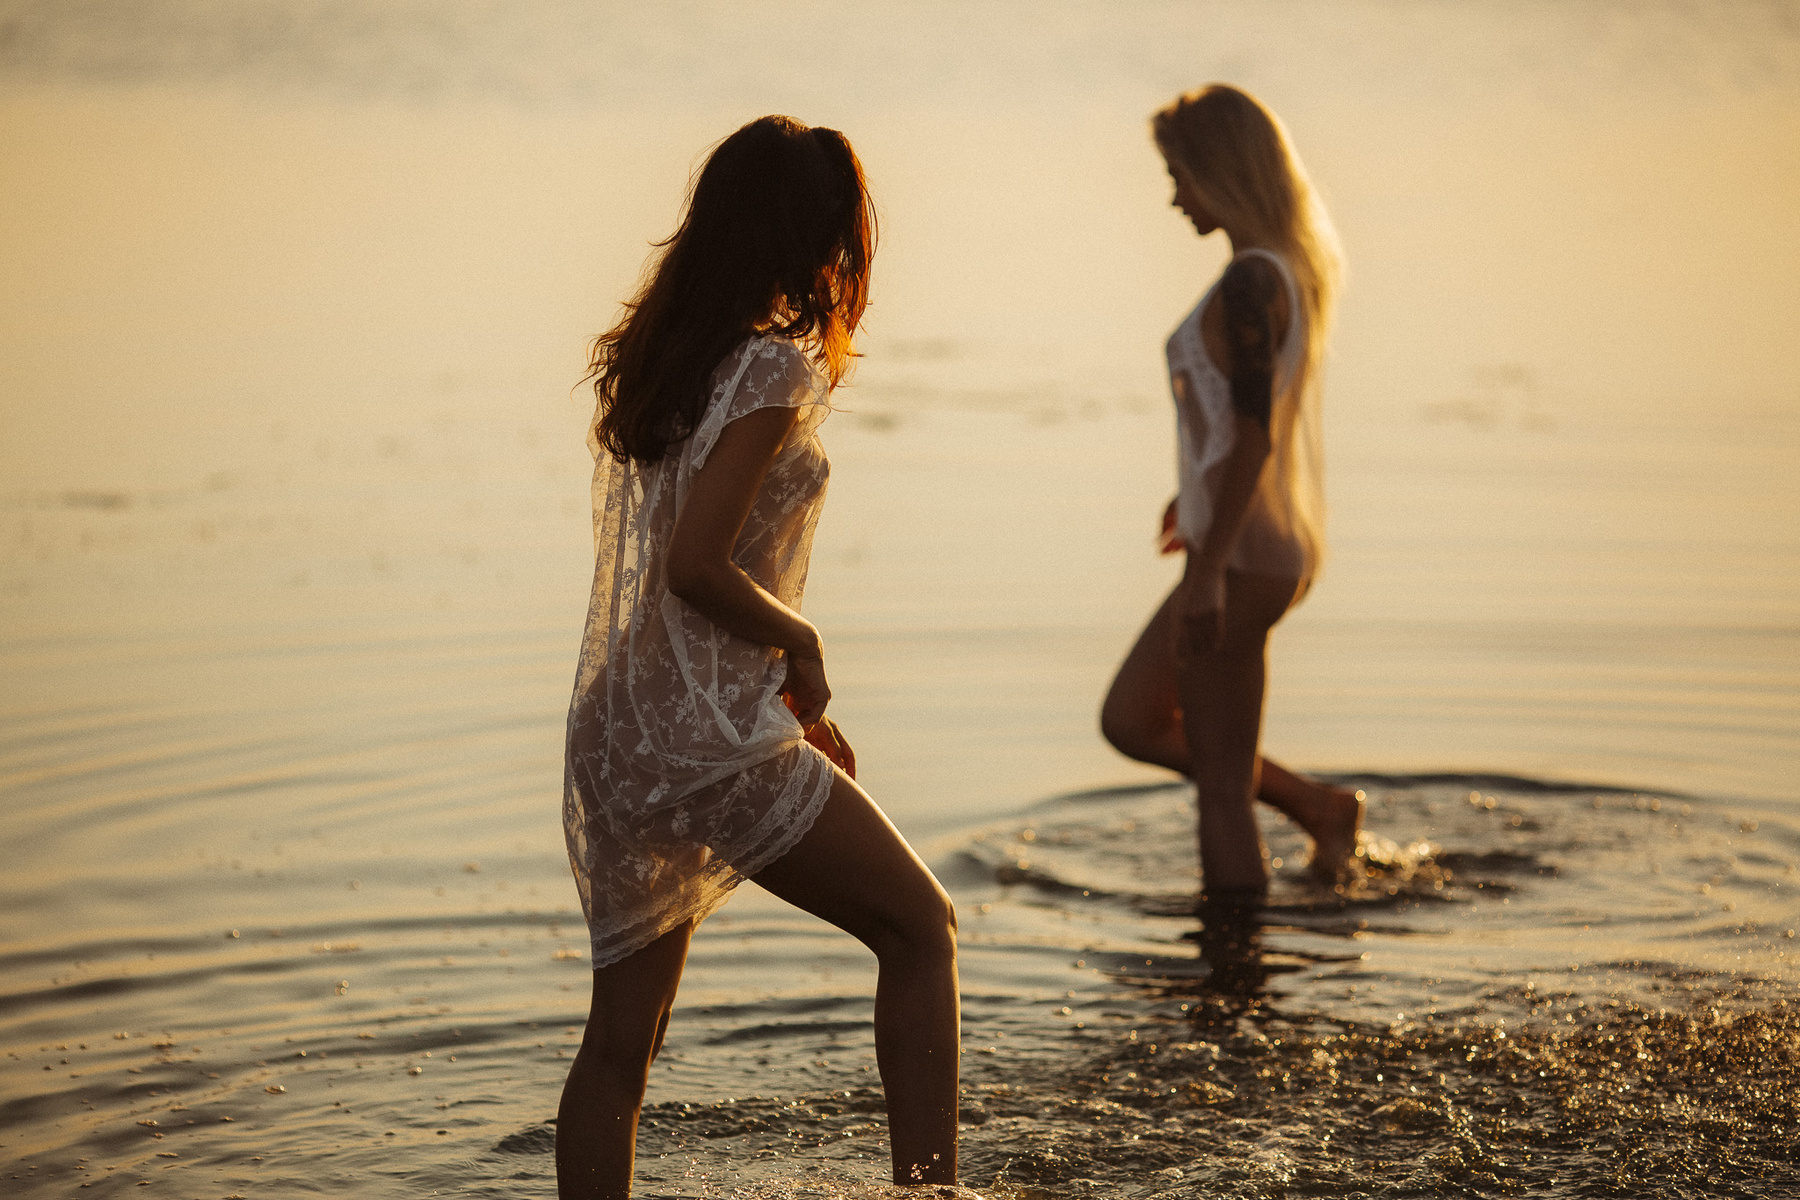 Летние забавы ню эротика жанр силуэт девушки голые будуар обнаженные художественная фотография лето река белье